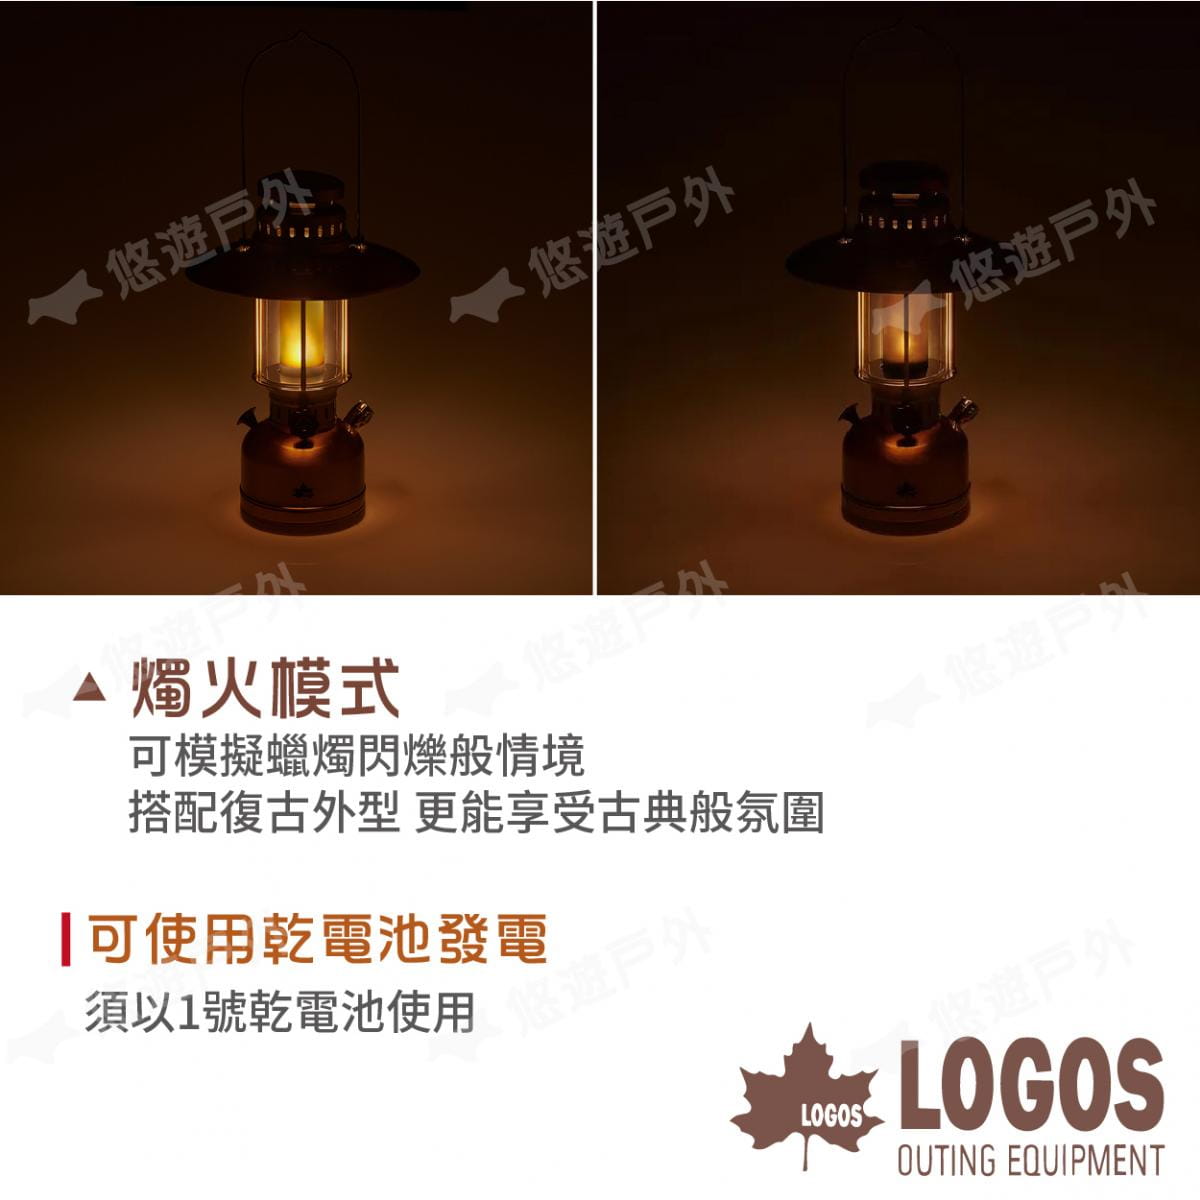 【LOGOS】古典LED營燈 LG74175003 (悠遊戶外) 5